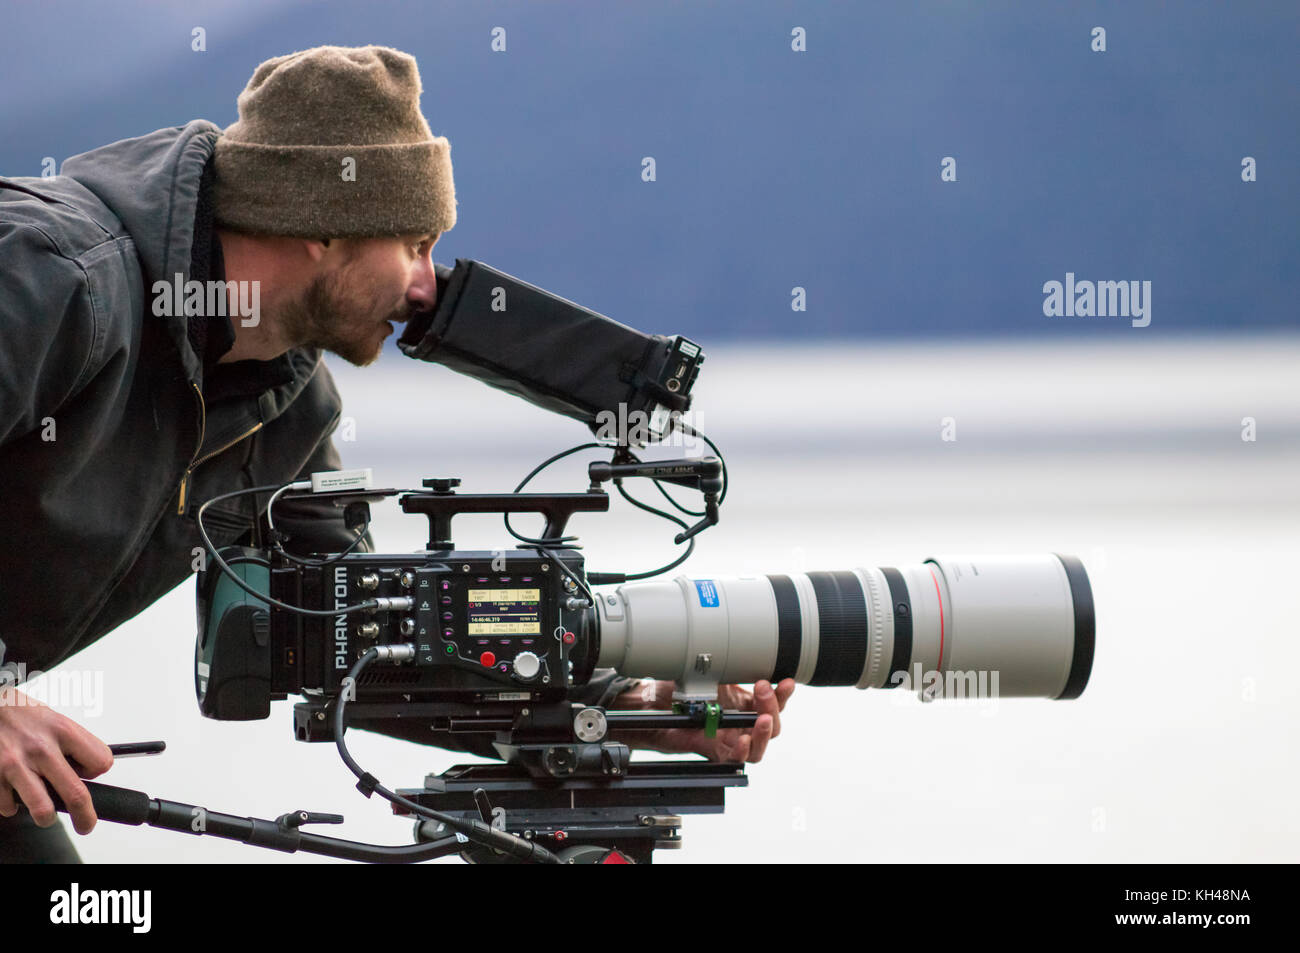 Nick Betrieb des High Speed phantom Flex 4k Video Kamera mit der Canon 200-400mm f4.0 Objektiv auf einem Schießen in Alaska, USA. das Schießen auf 960 fps. Stockfoto